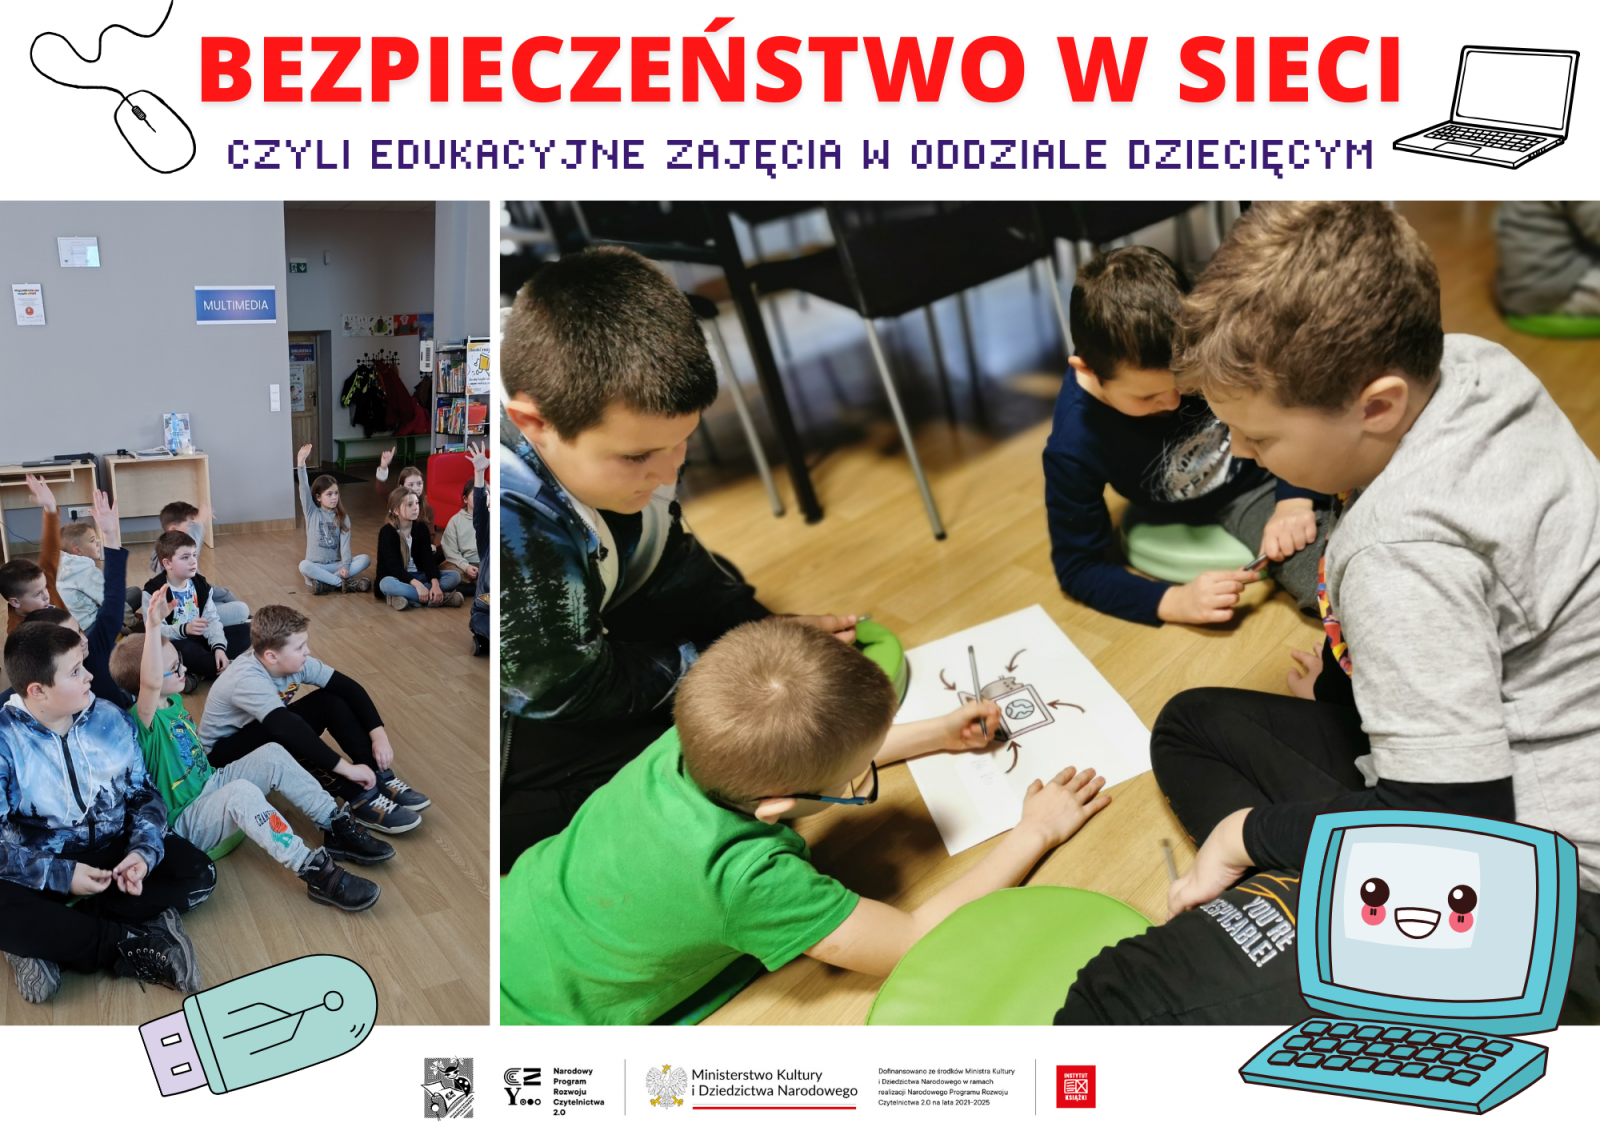 Lekcje z bezpiecznego korzystania z Internetu dla dzieci w Oddziale Dziecięcym biblioteki.